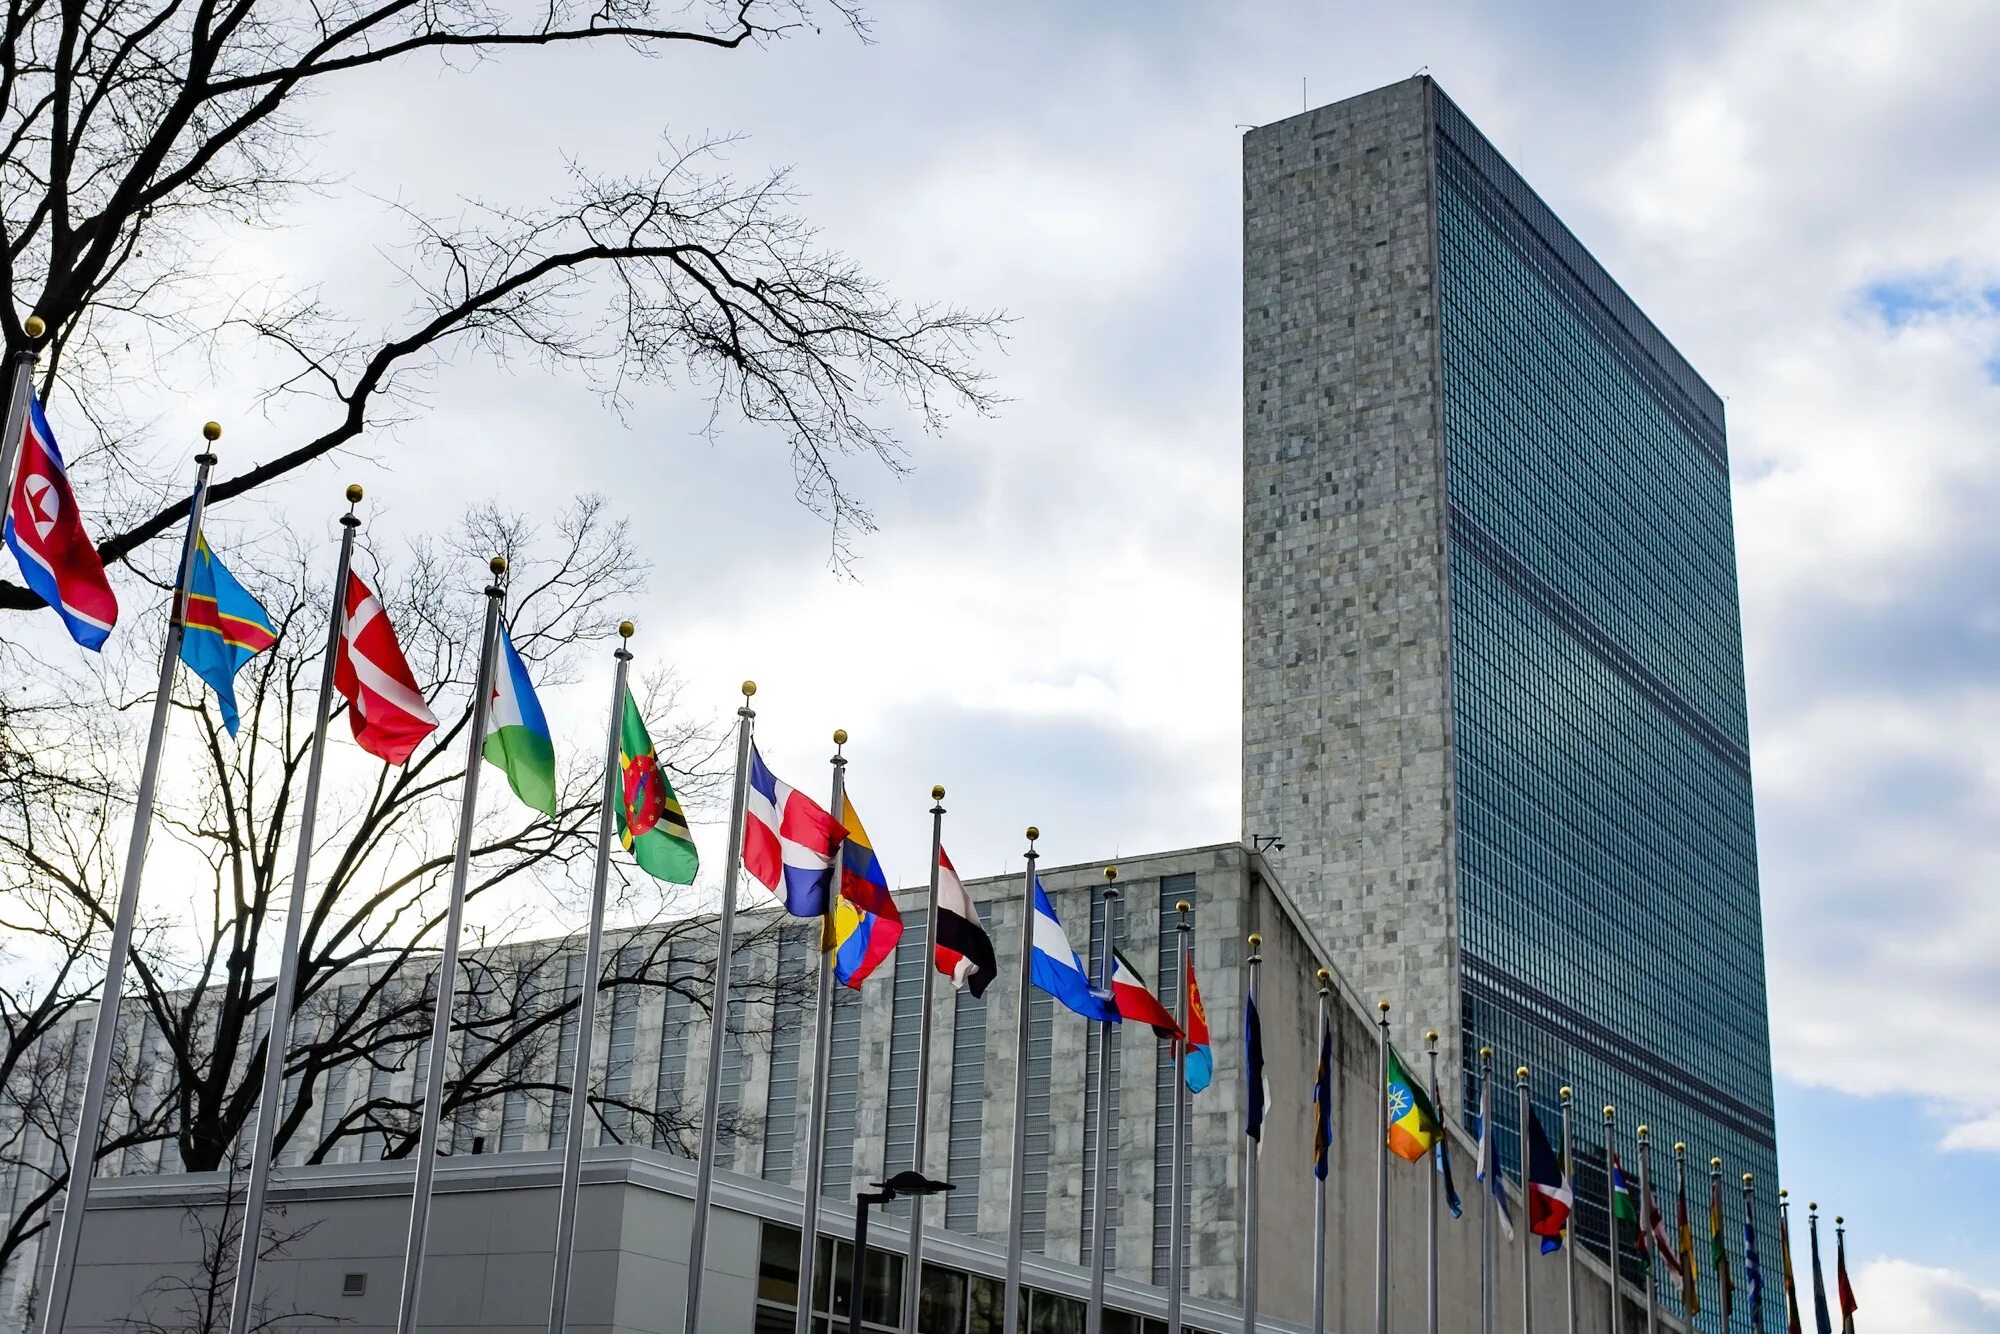 ООН В Нью Йорке. Штаб ООН В Нью-Йорке. Секретариат ООН В Нью Йорке. ООН Нью -Йорк штаб-квартира Нью-Йорк. Офис оон